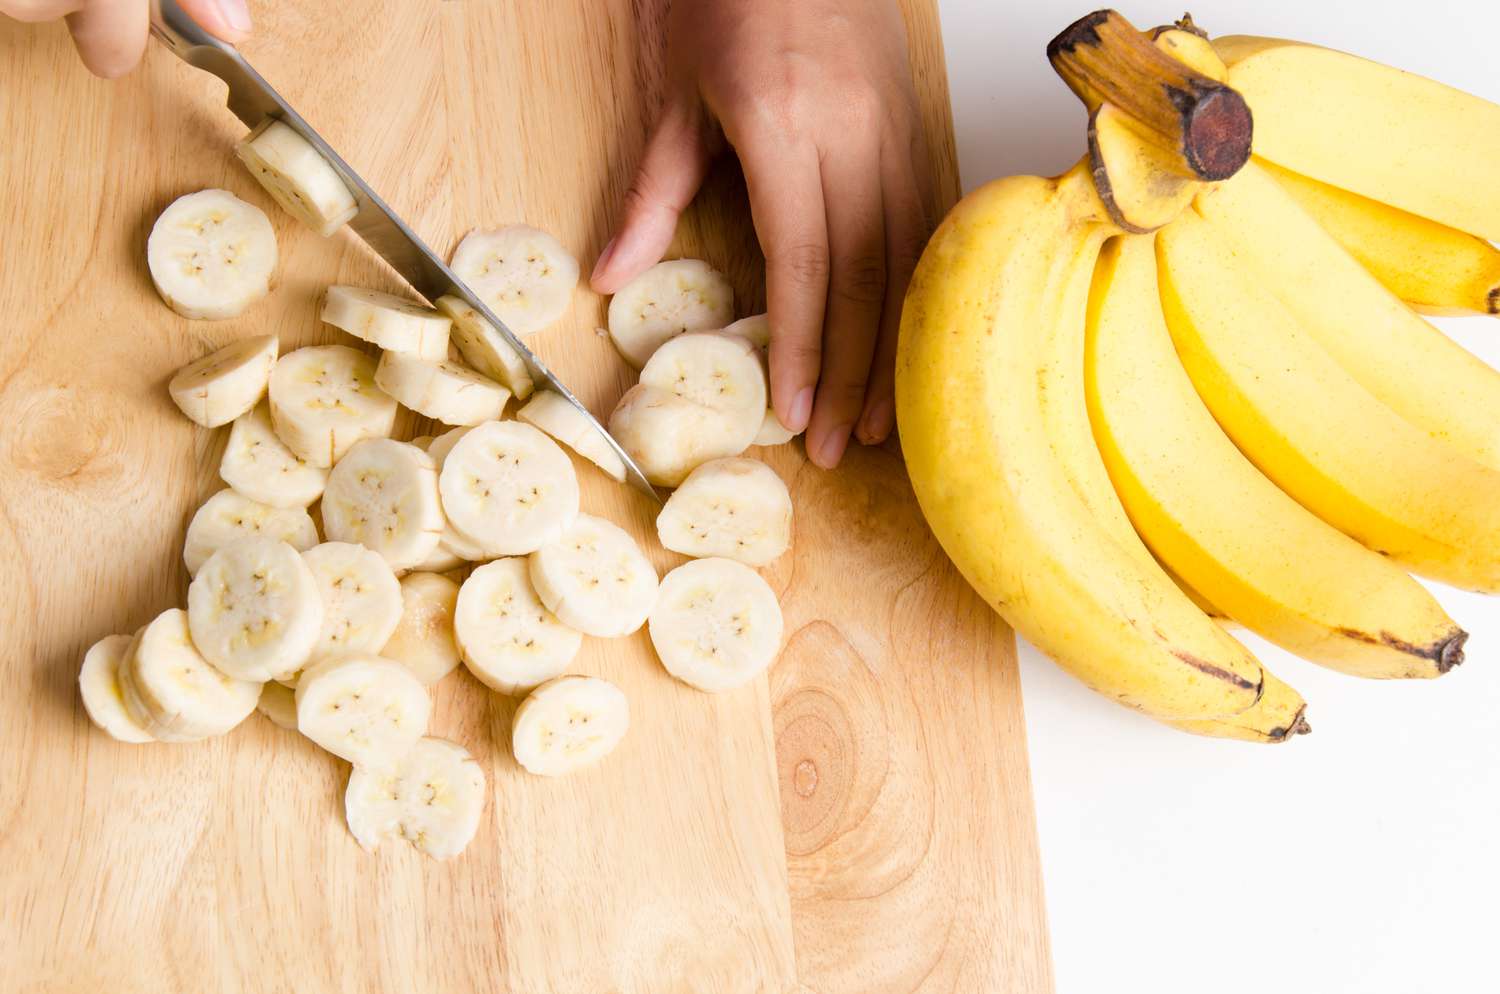 Bijgesneden handen die banaan snijden op snijplank